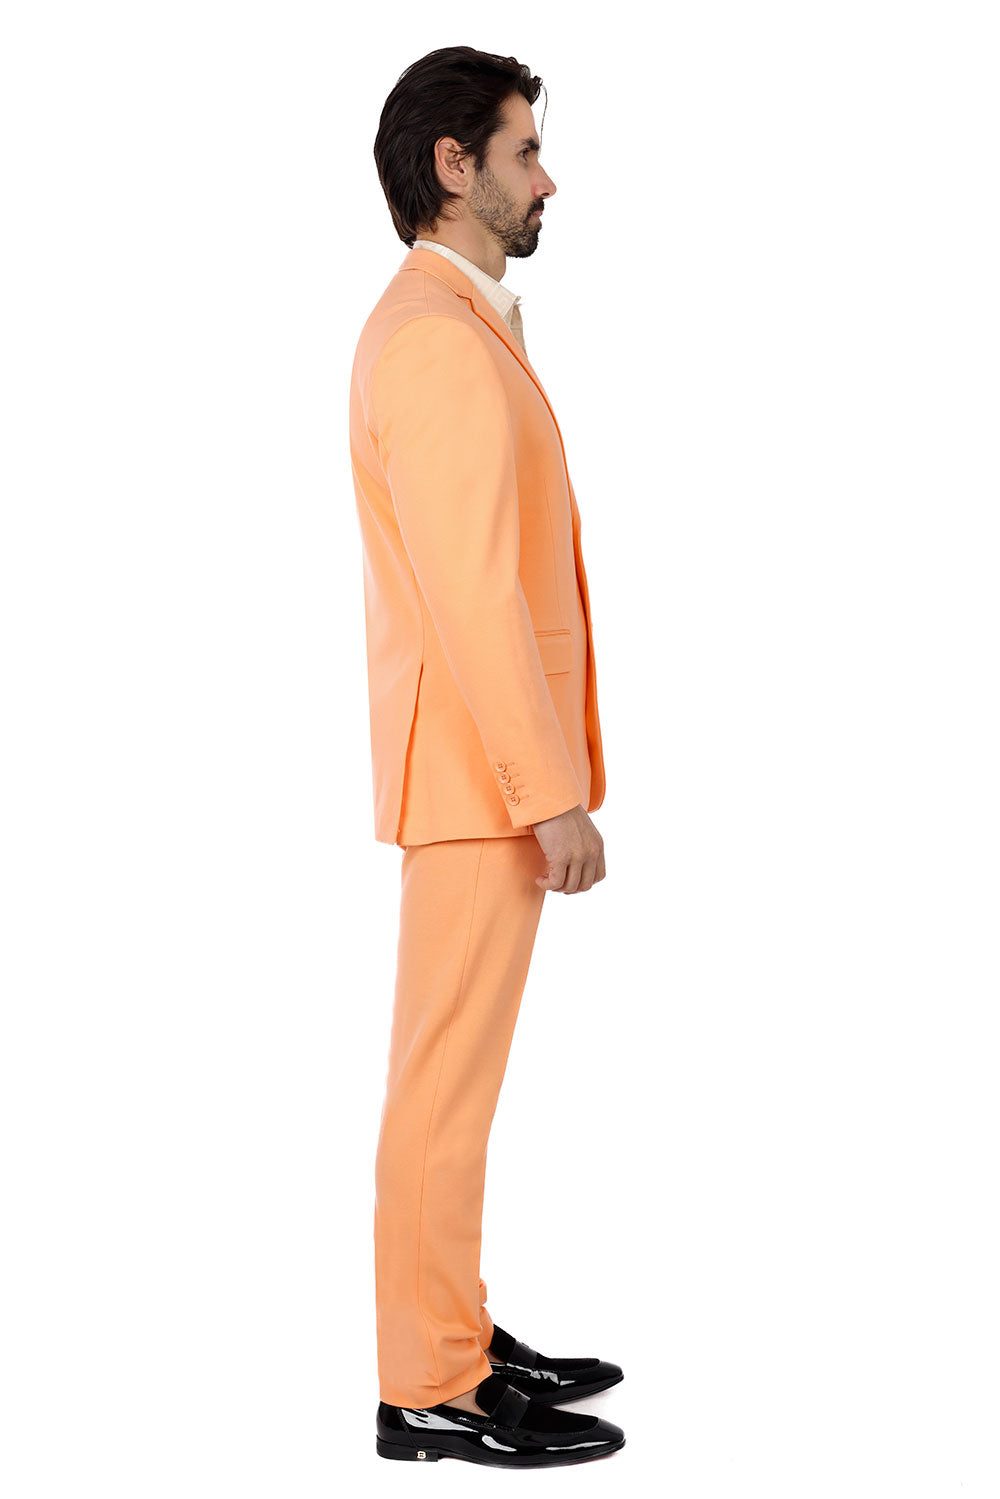 BARABAS Men's Brushed Cotton Notch Lapel Matte Casual Suit 3SU02 Apricot